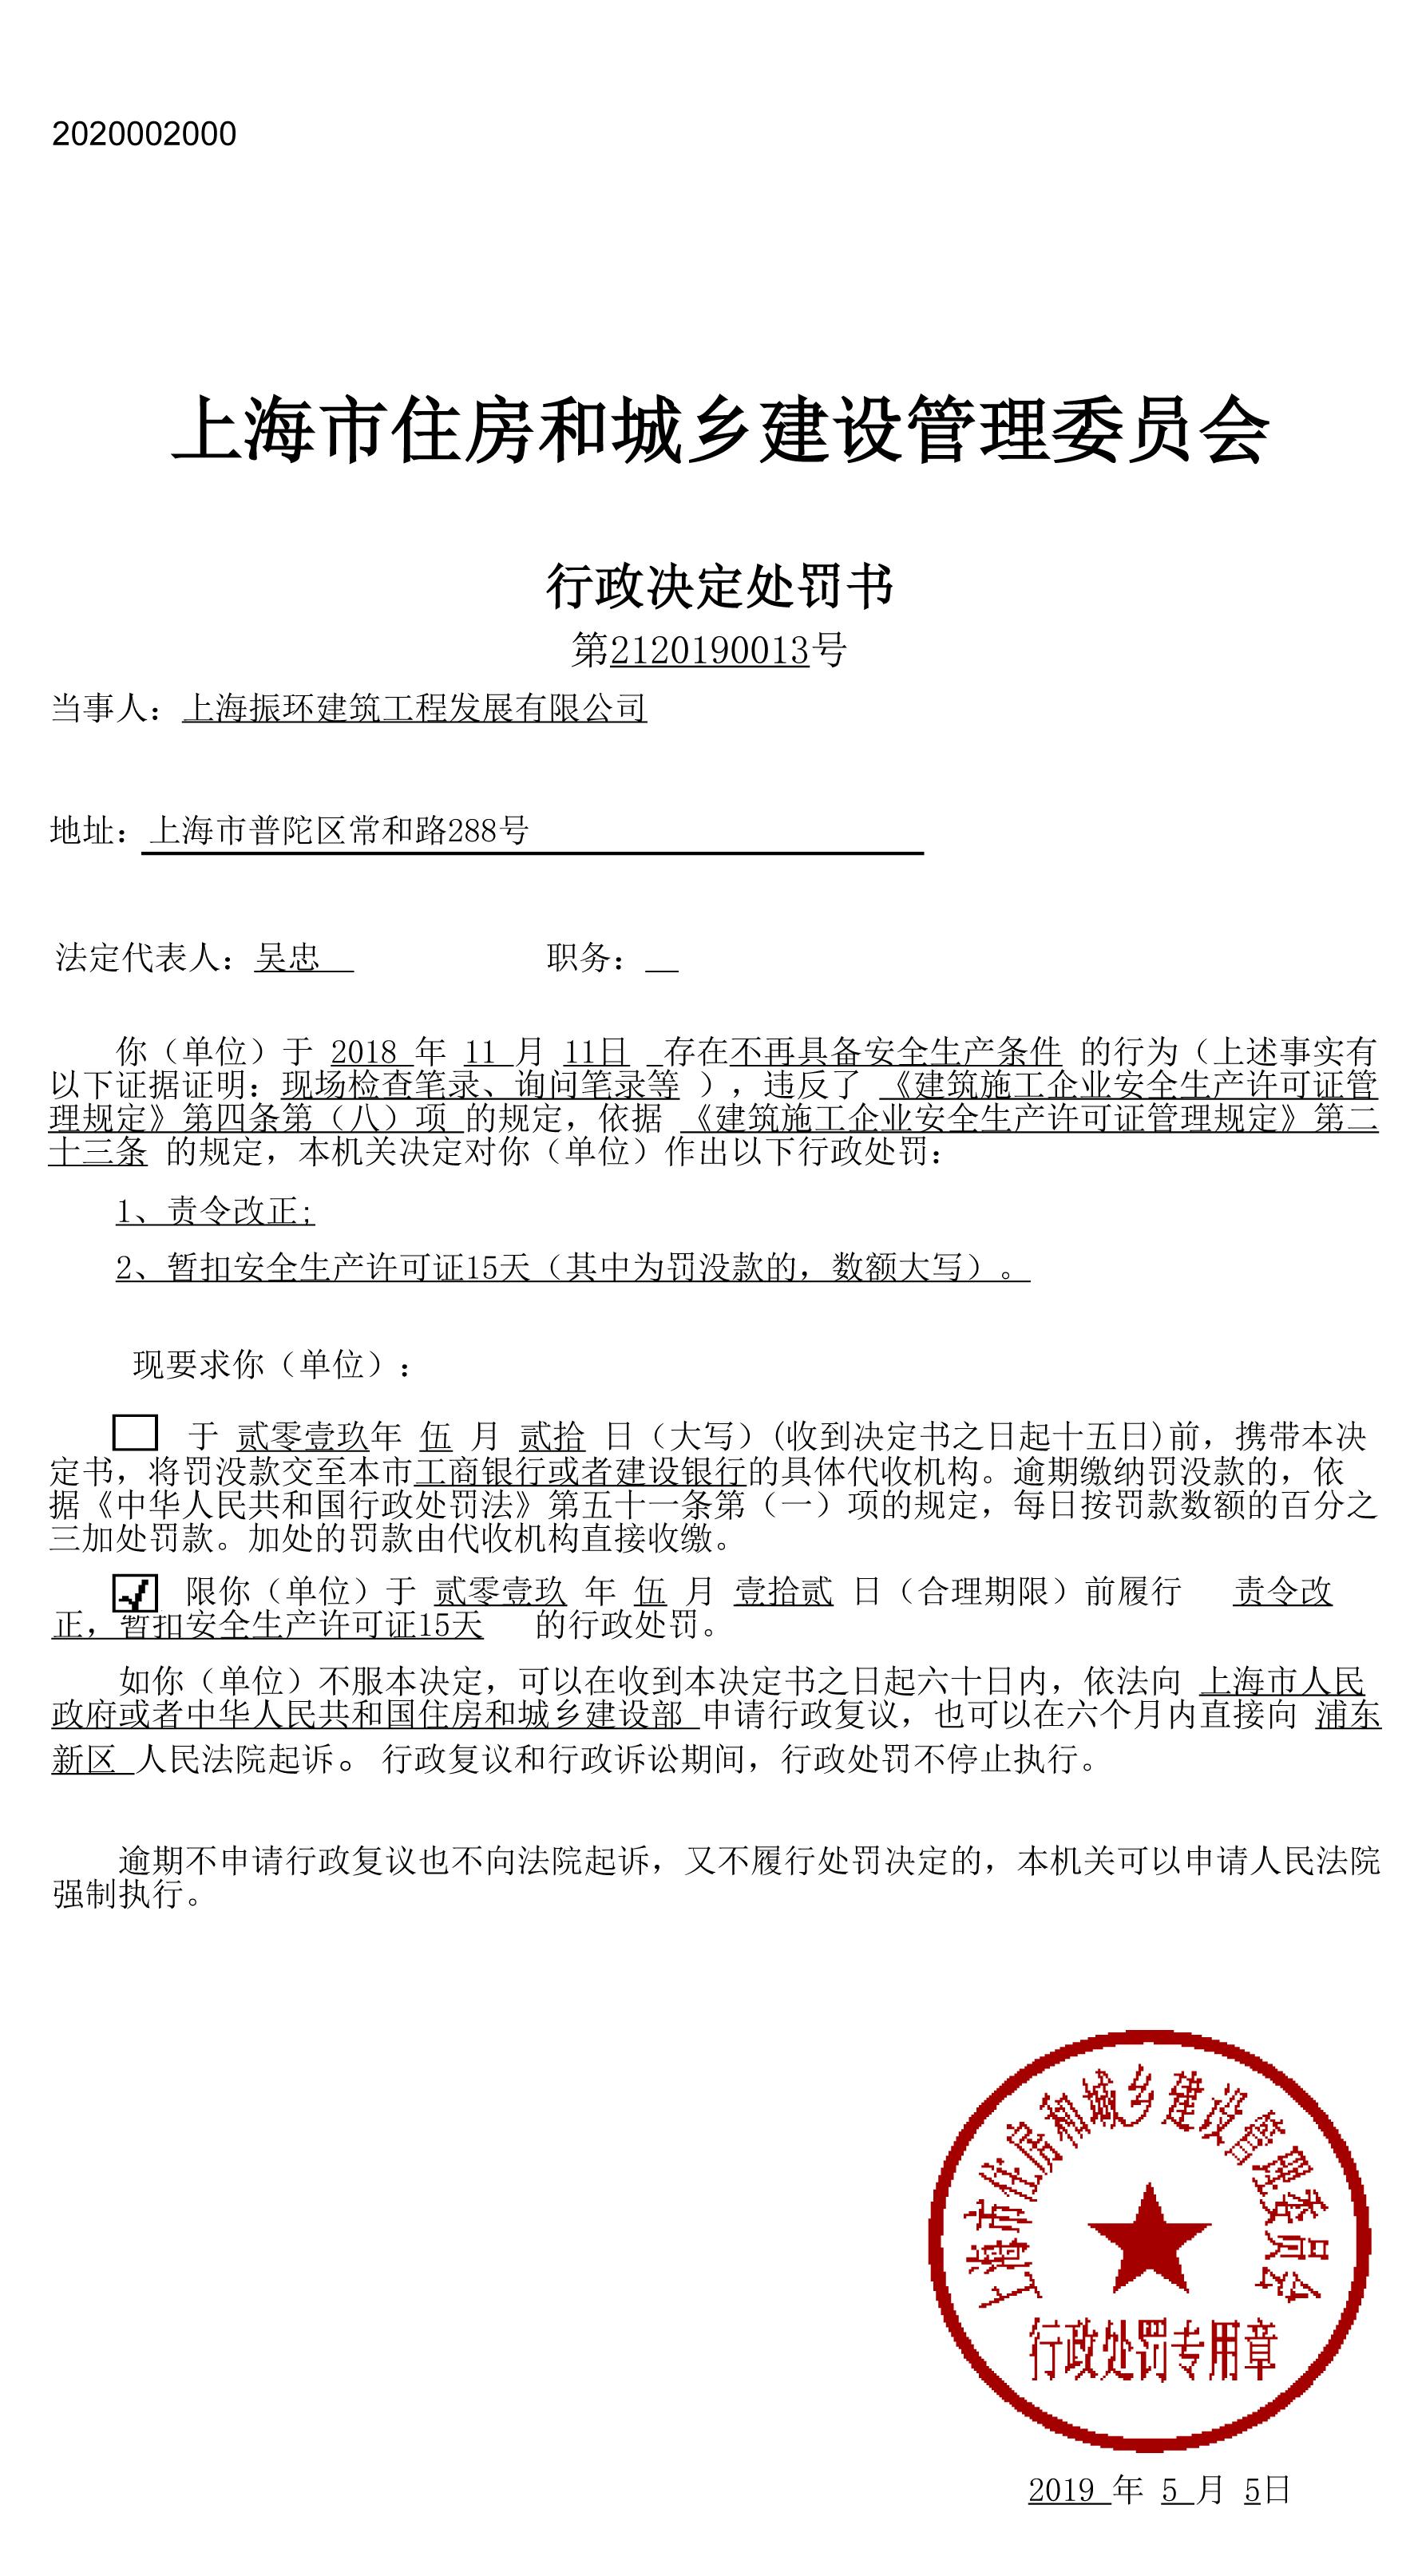 上海振环建筑工程发展有限公司因存在安全生产隐患被处罚